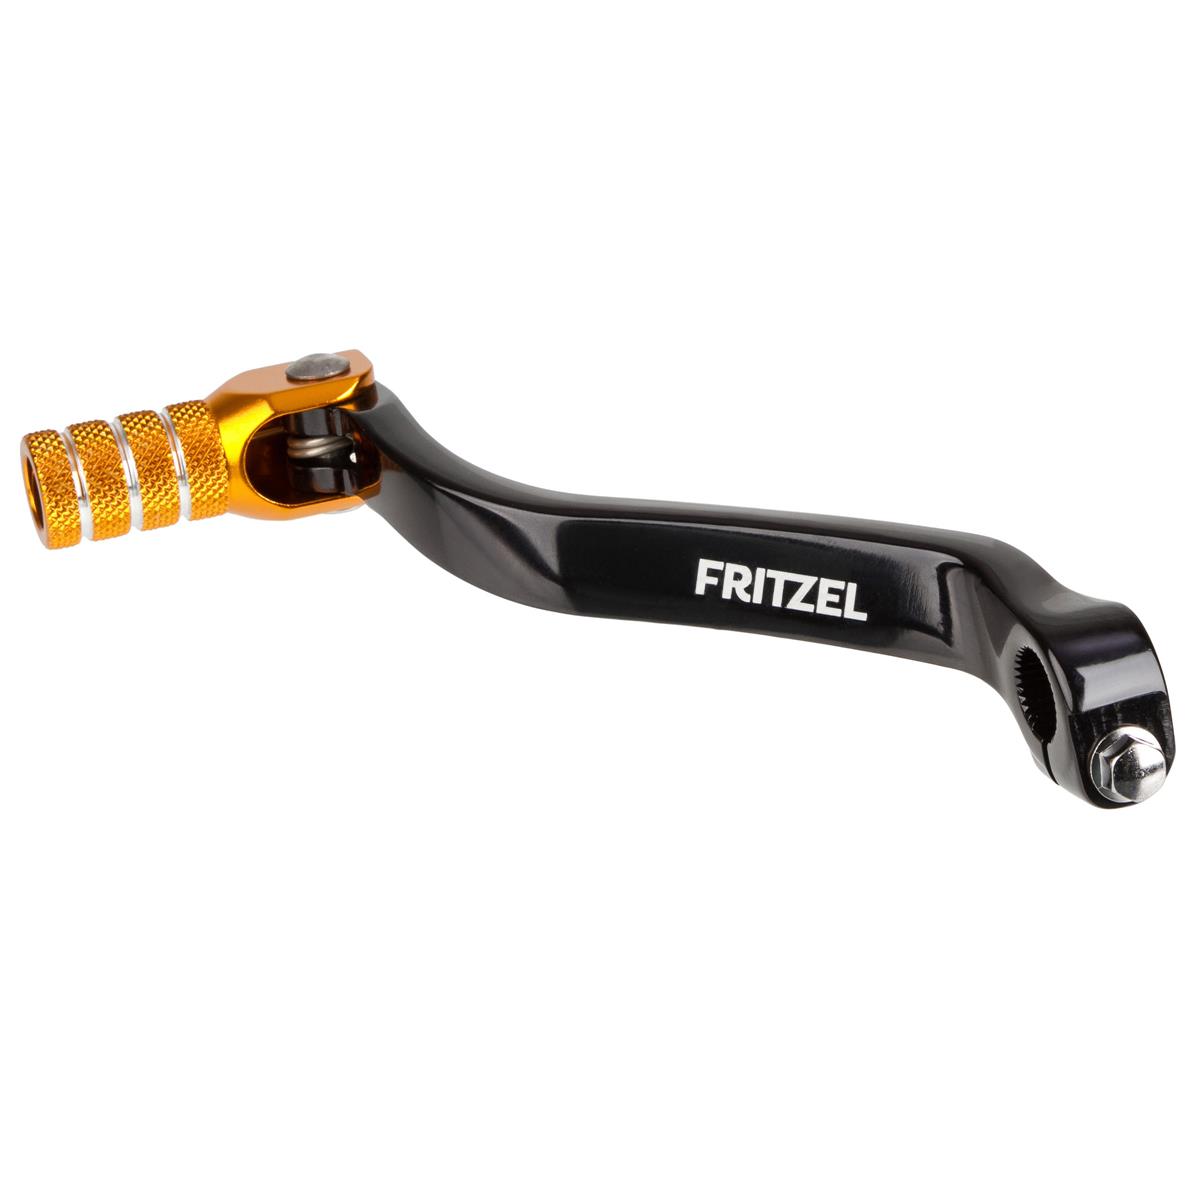 FRITZEL Shift Lever Wellenreiter Suzuki RMZ 450 08-17, Black/Gold